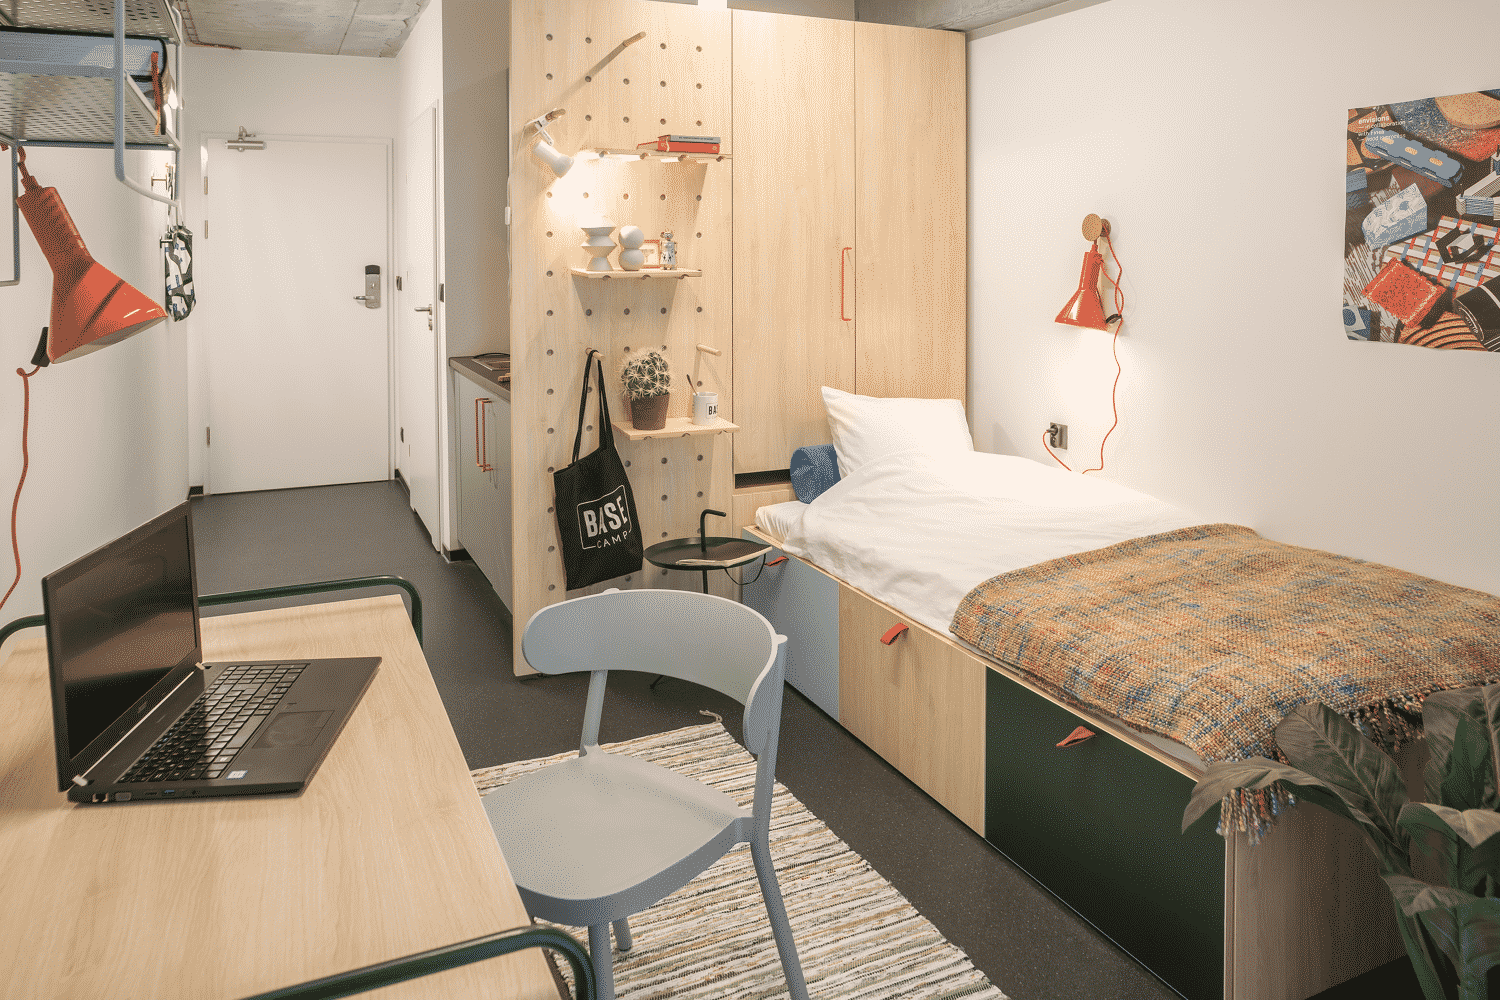 20 восхитительных идей по созданию неповторимого оформления комнаты в общежитии